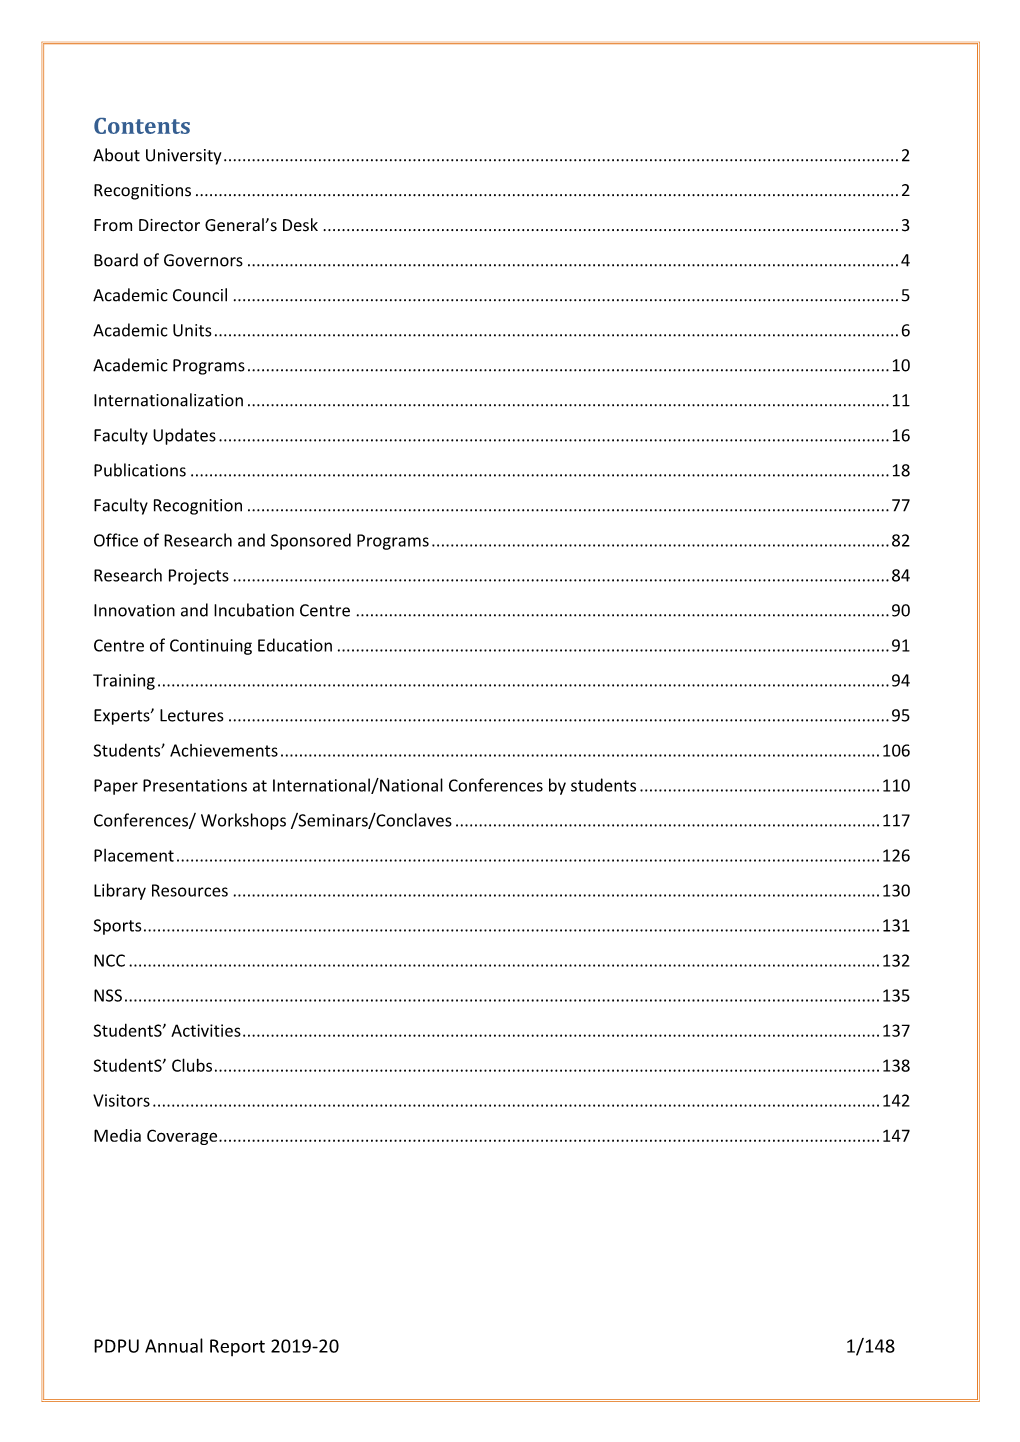 PDPU Annual Report 2019-20 1/148